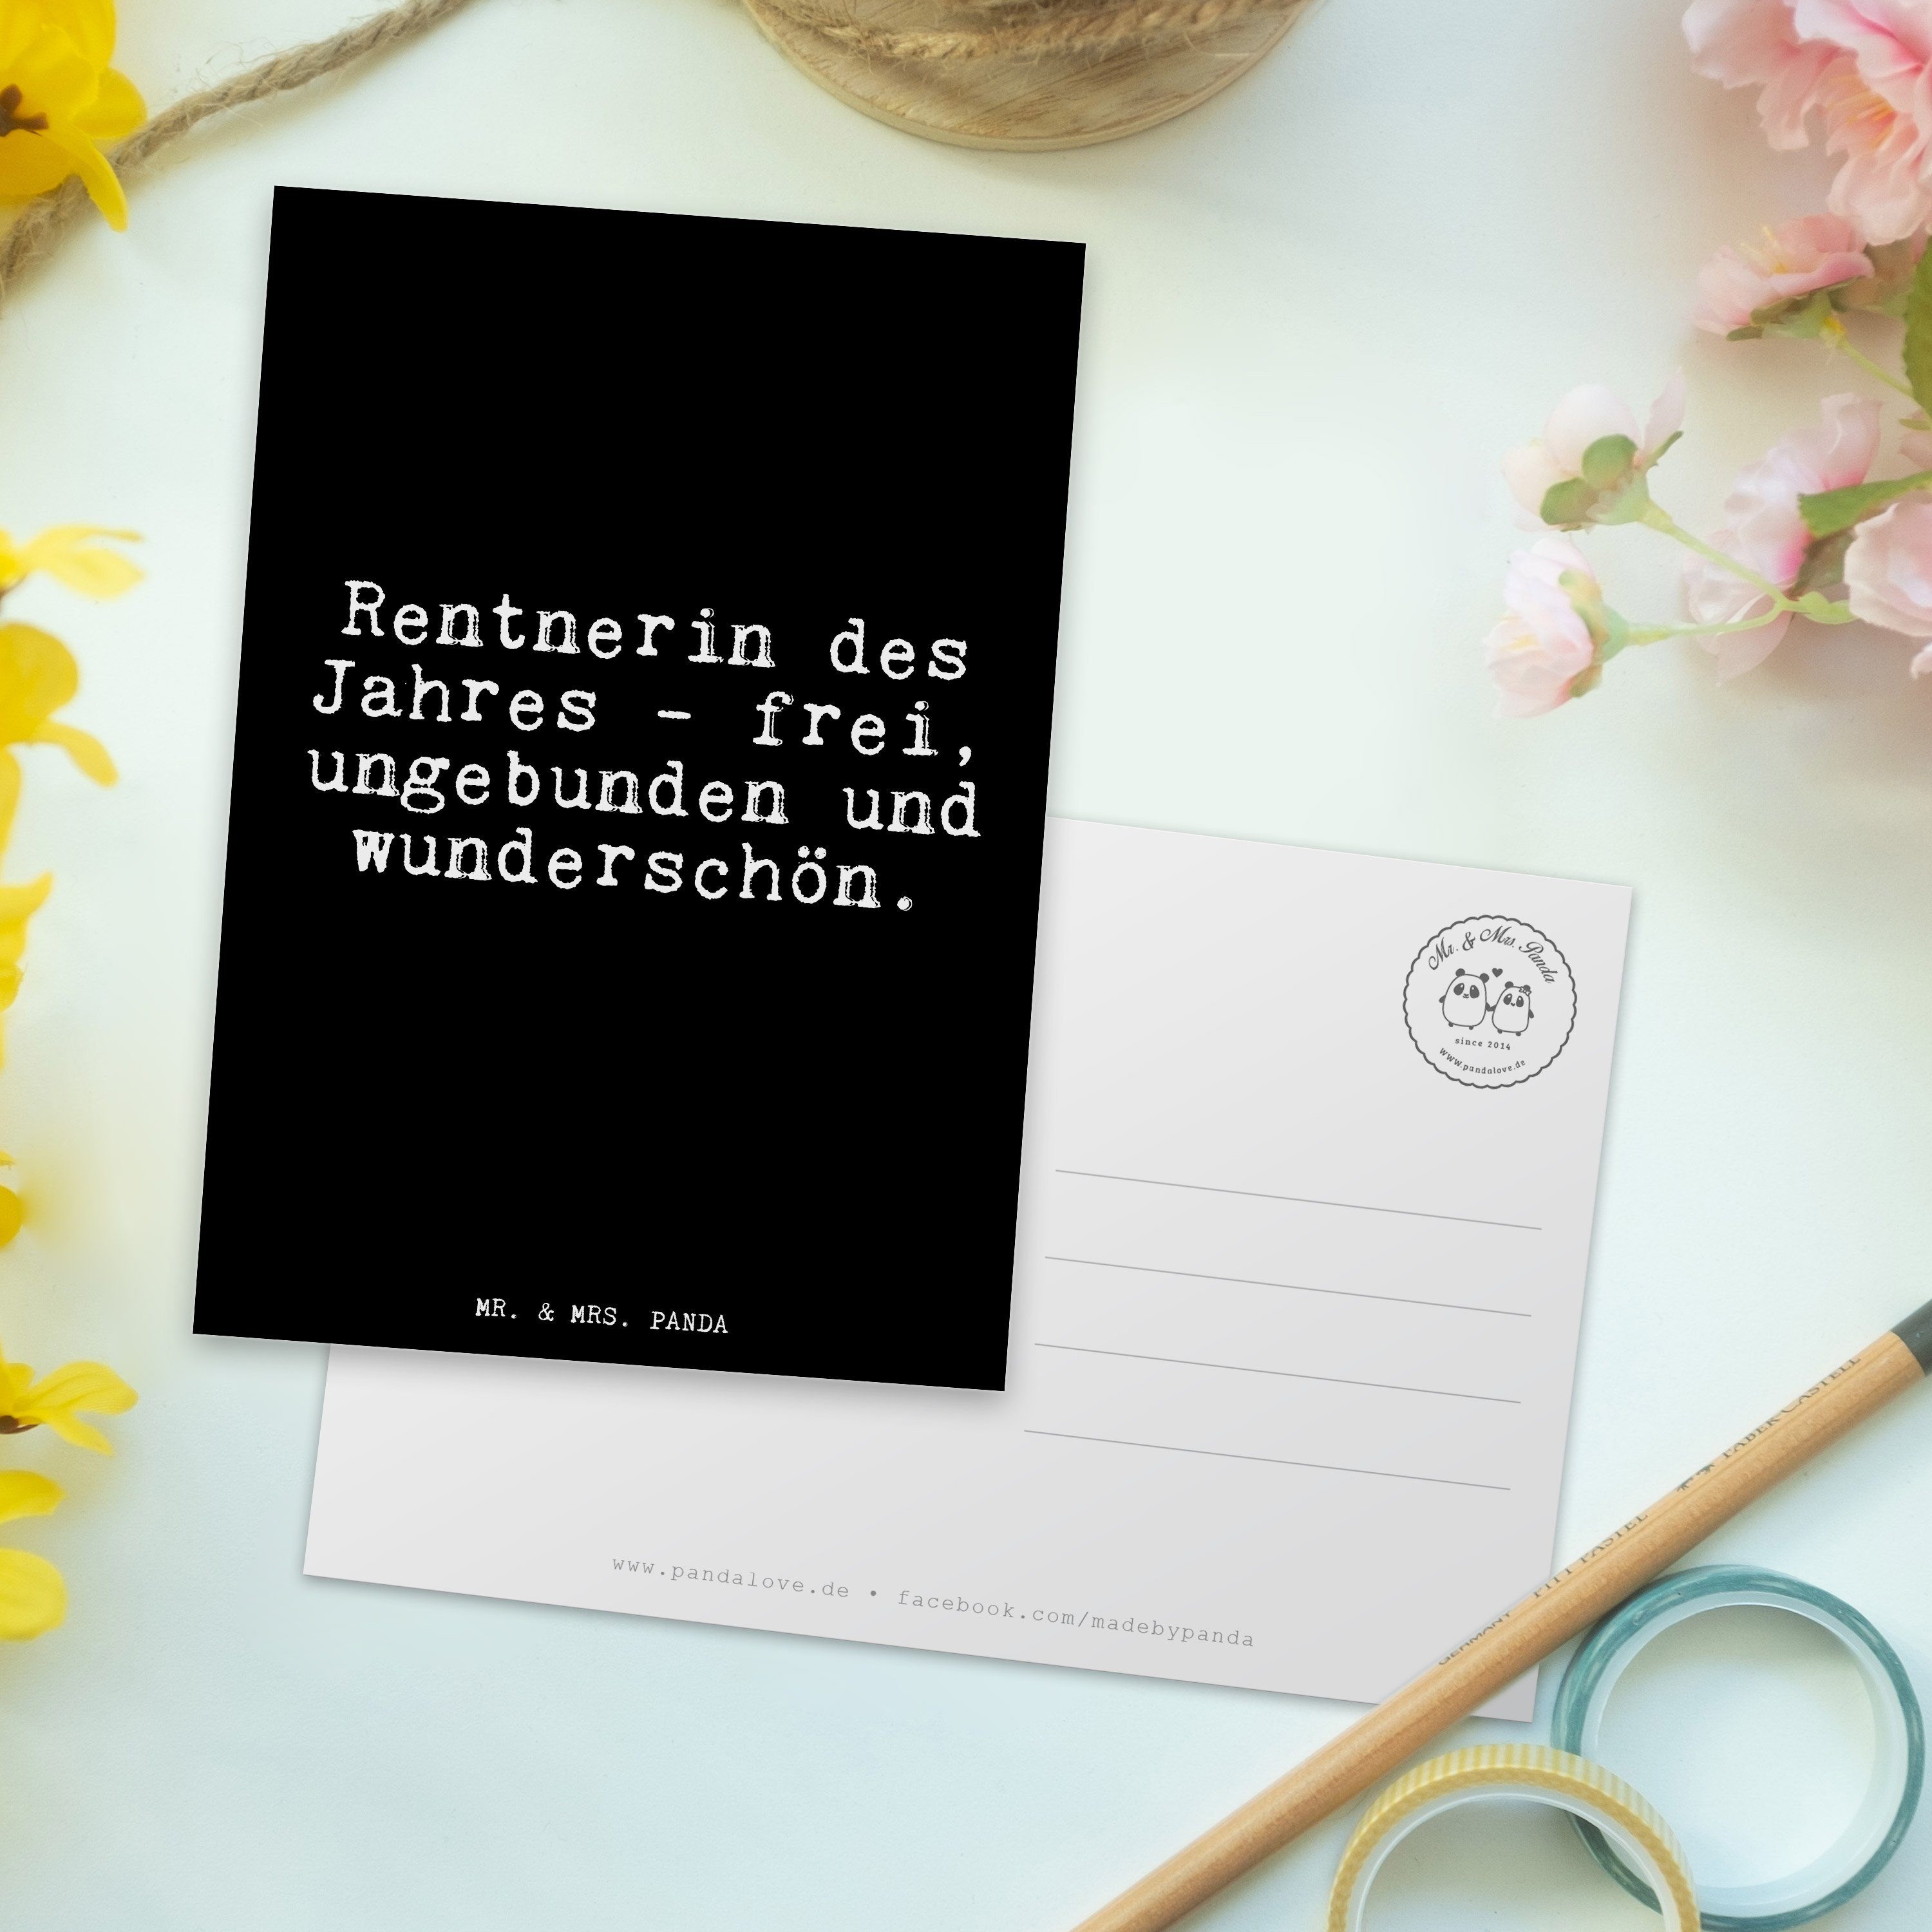 Mr. & Mrs. Panda Postkarte Karte Pensionierung, Rentnerin Schwarz Geschenk, -... des - Jahres 